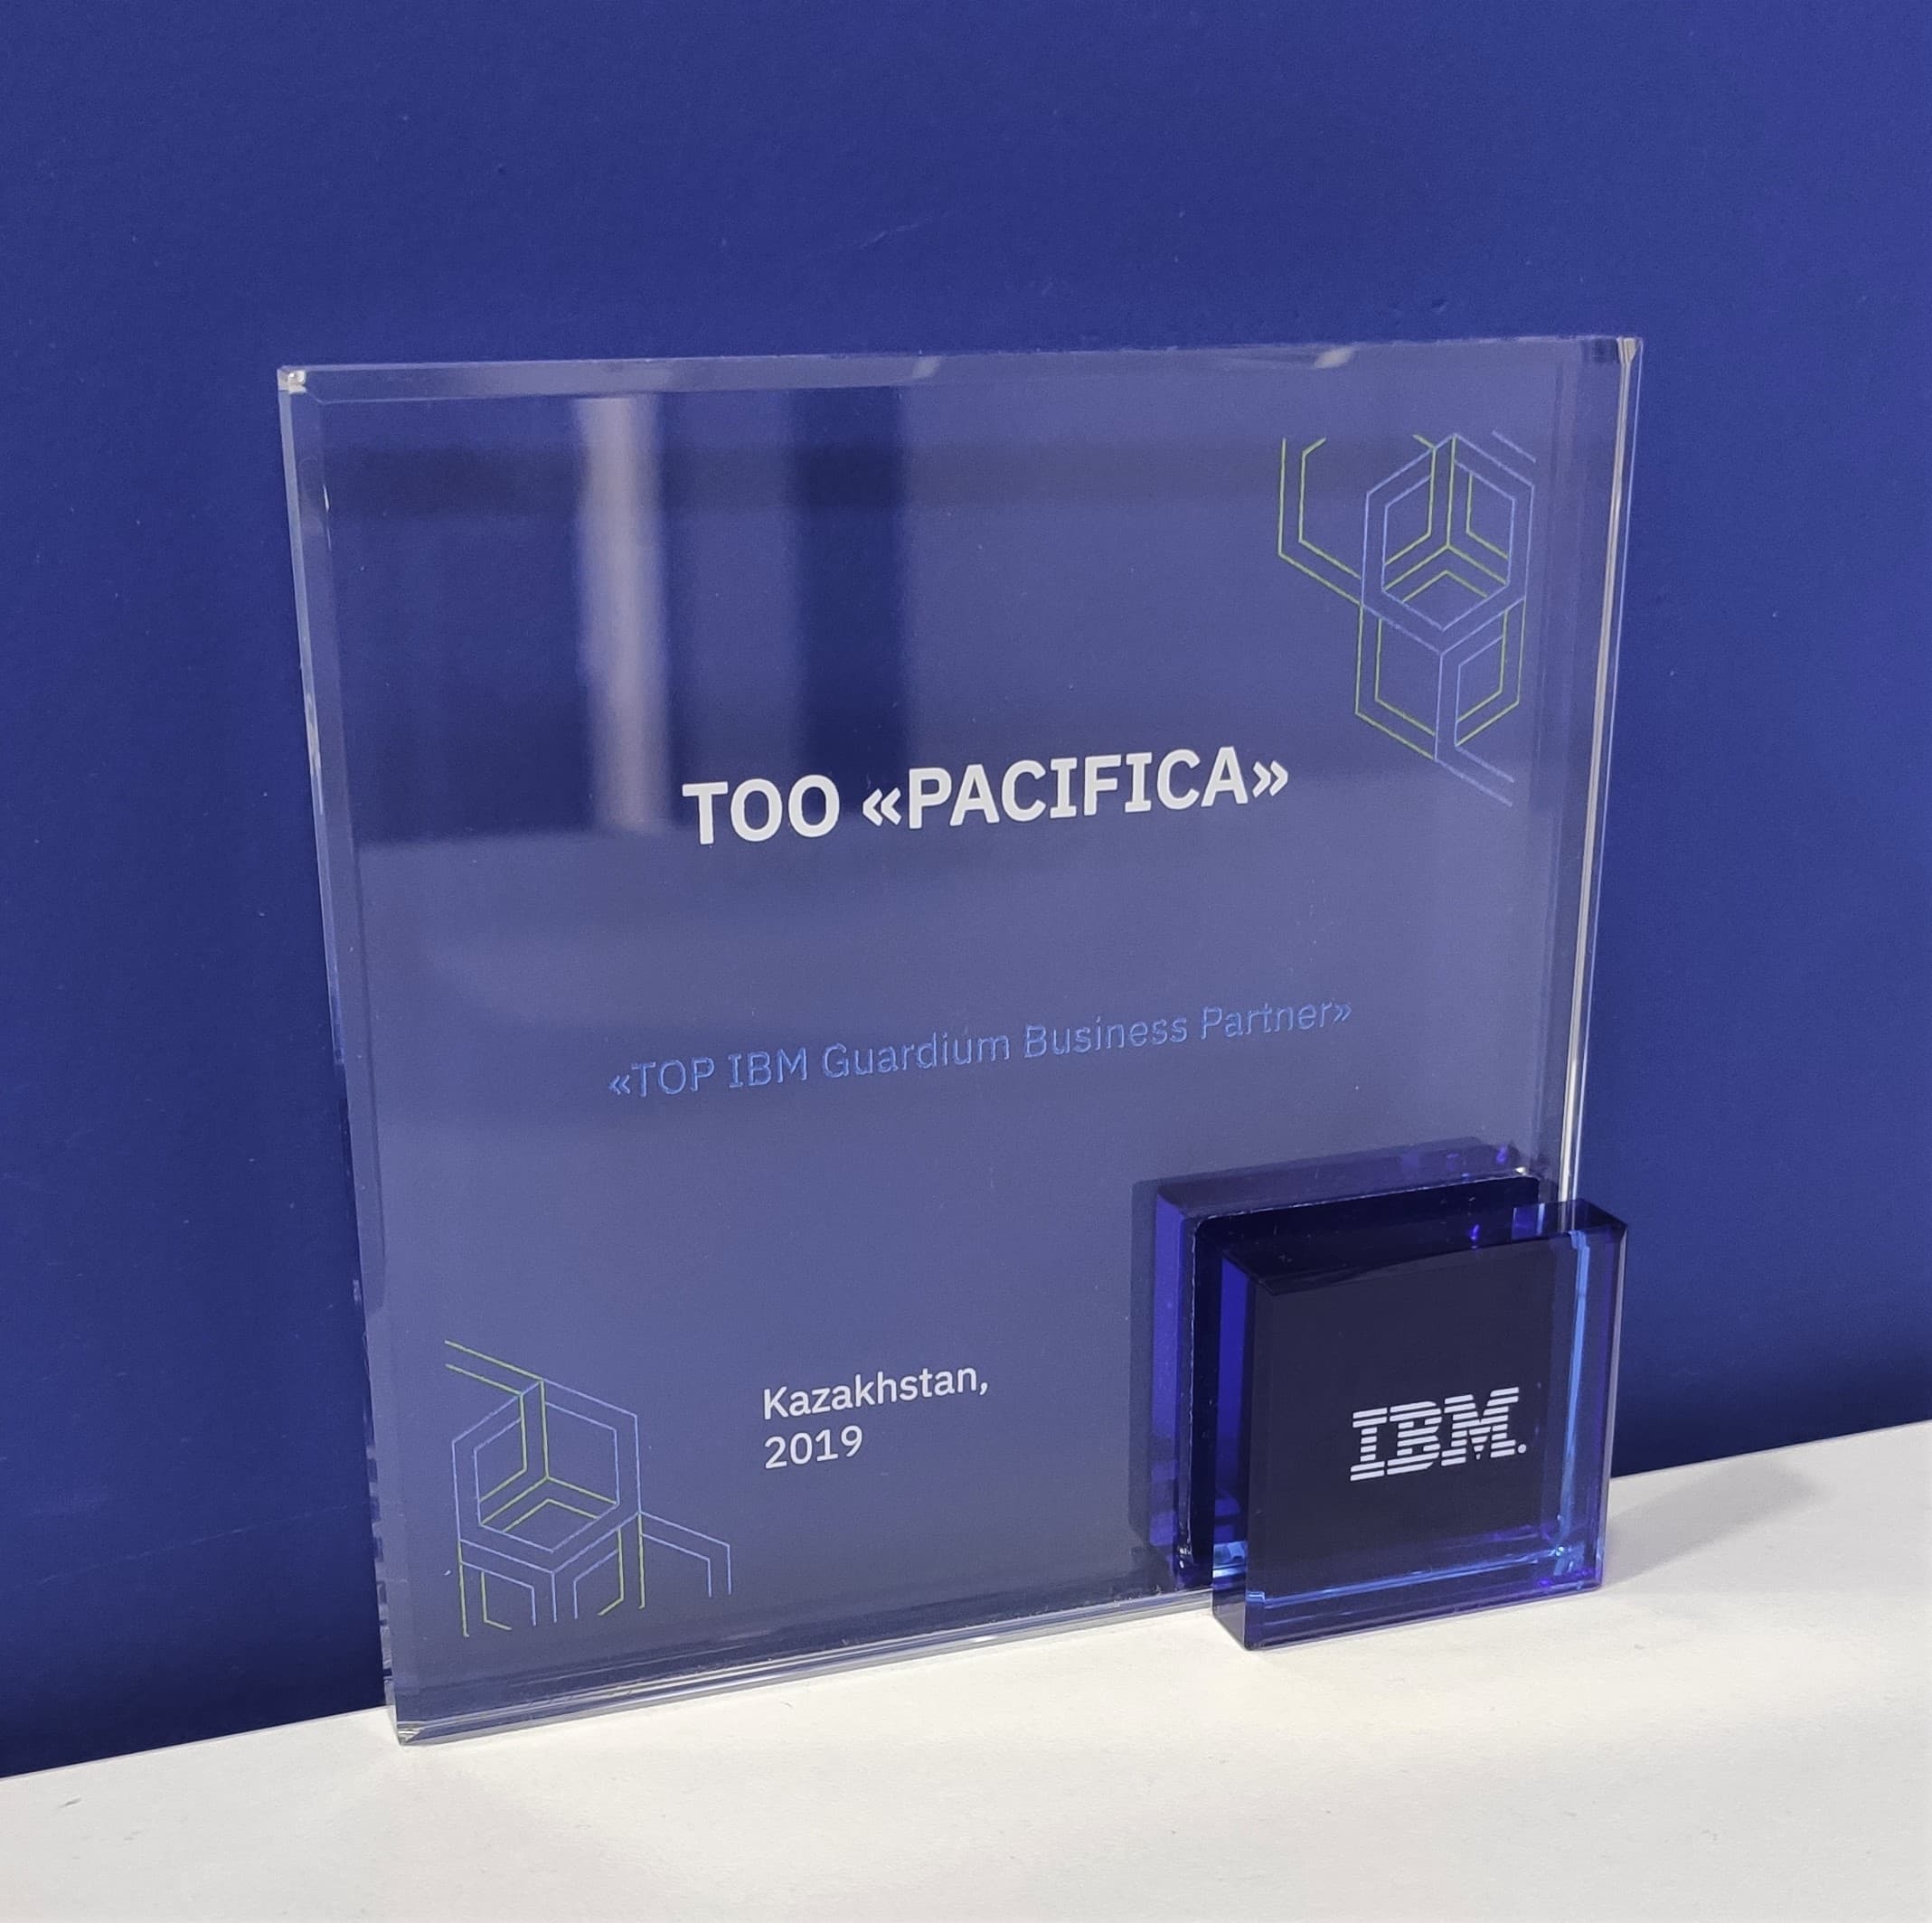 PACIFICA - "TOP IBM Guardium Business Partner"